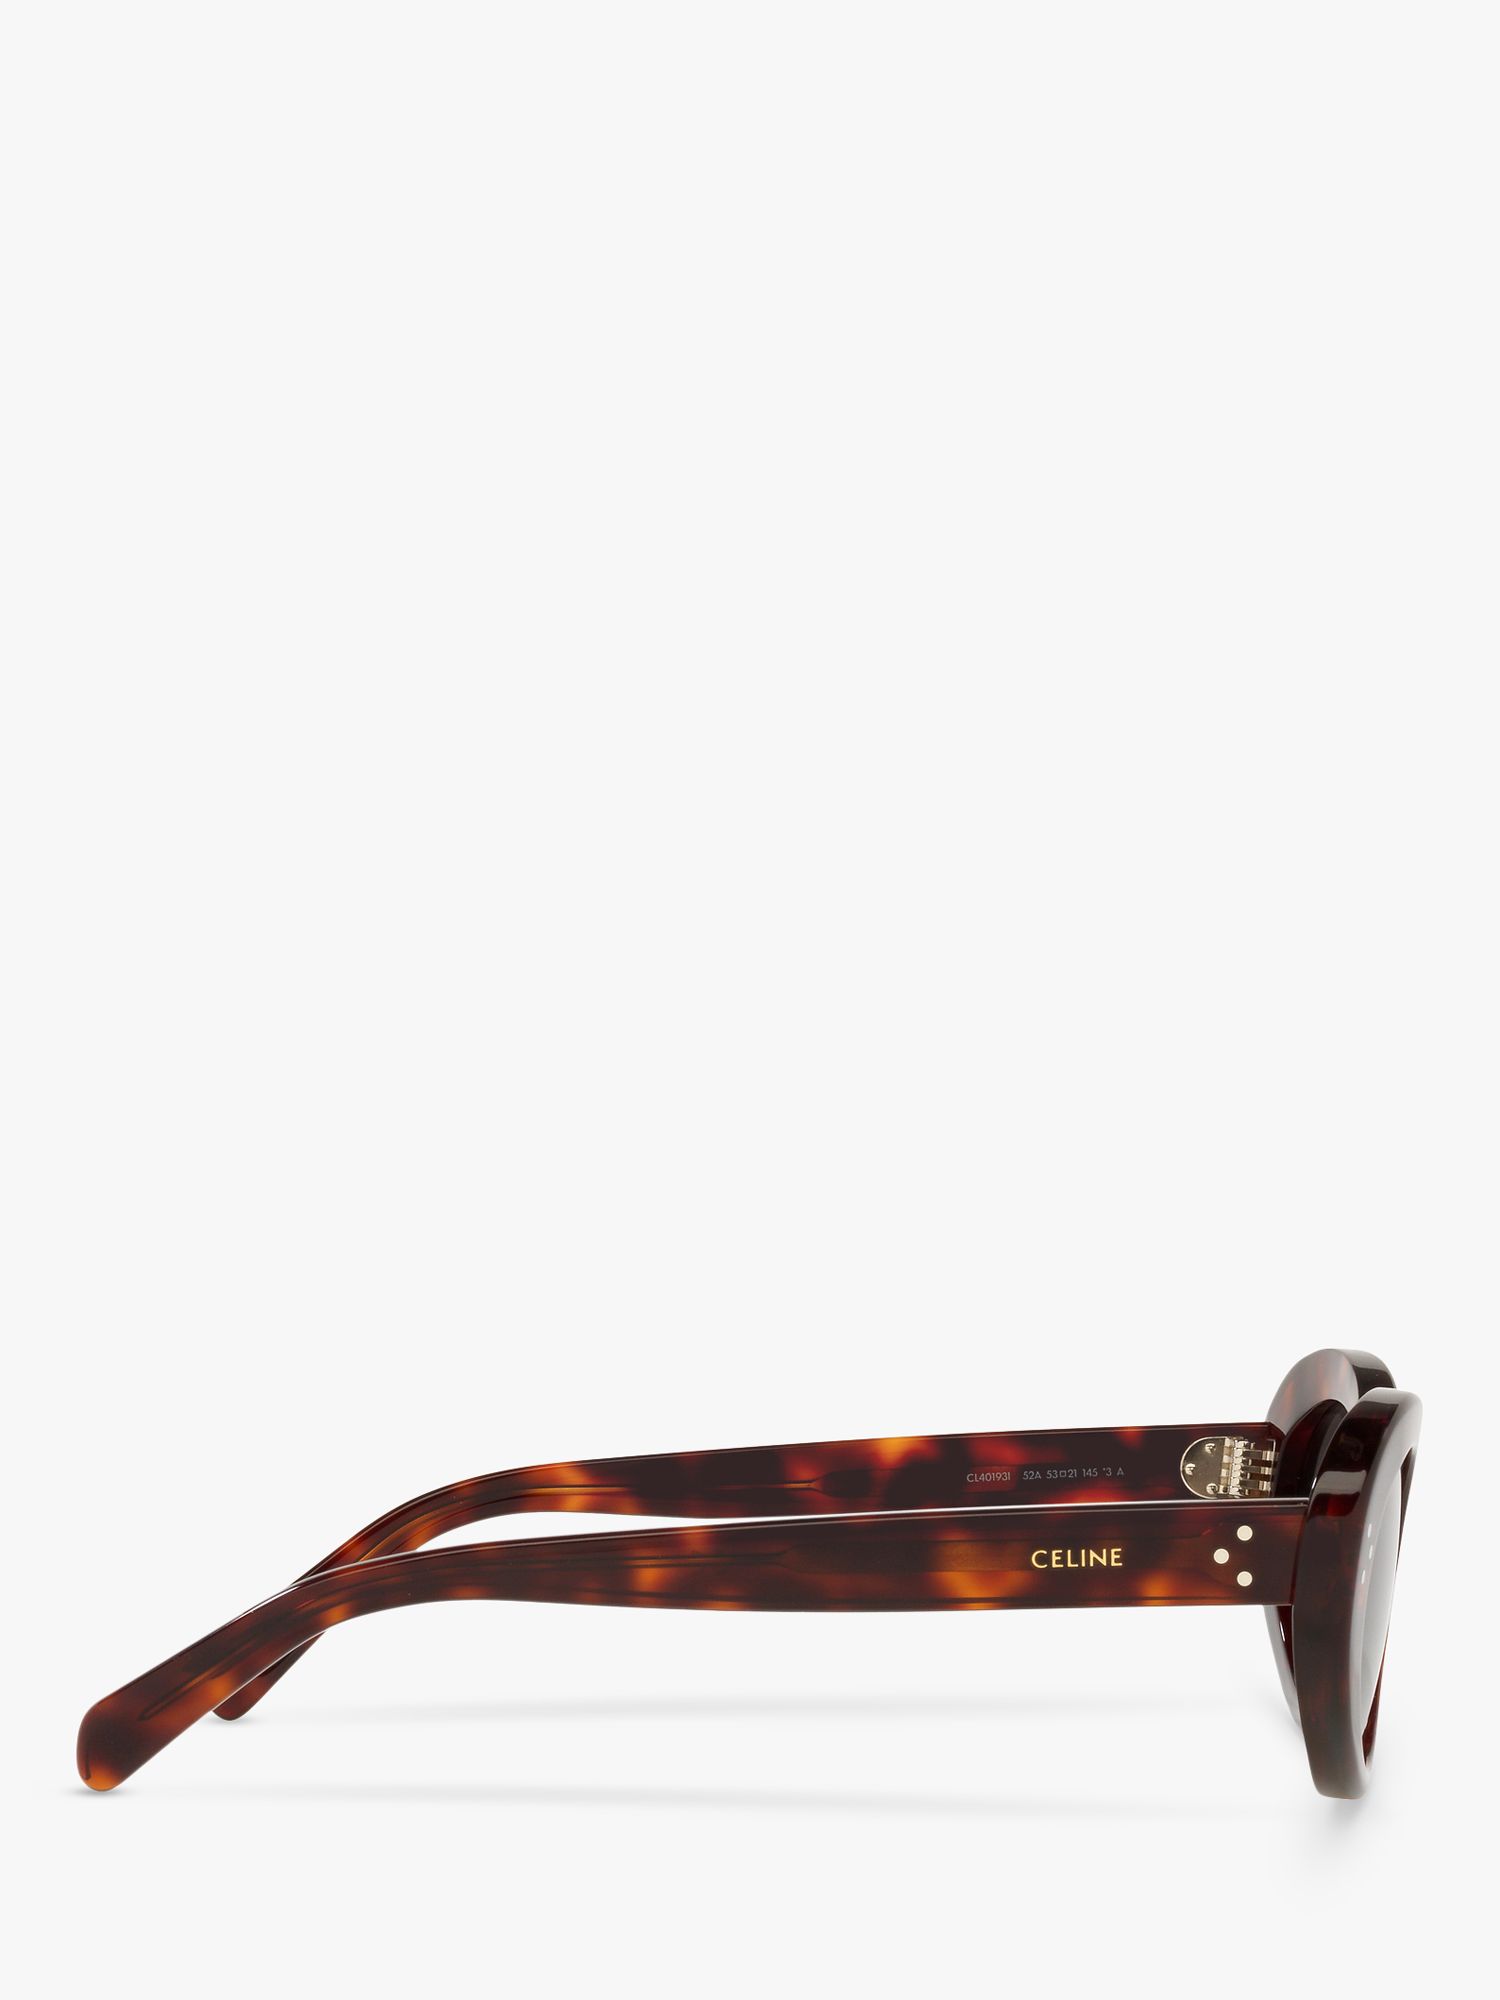 Celine CL40193I Women's Cat's Eye Sunglasses, Black Tortoise/Grey